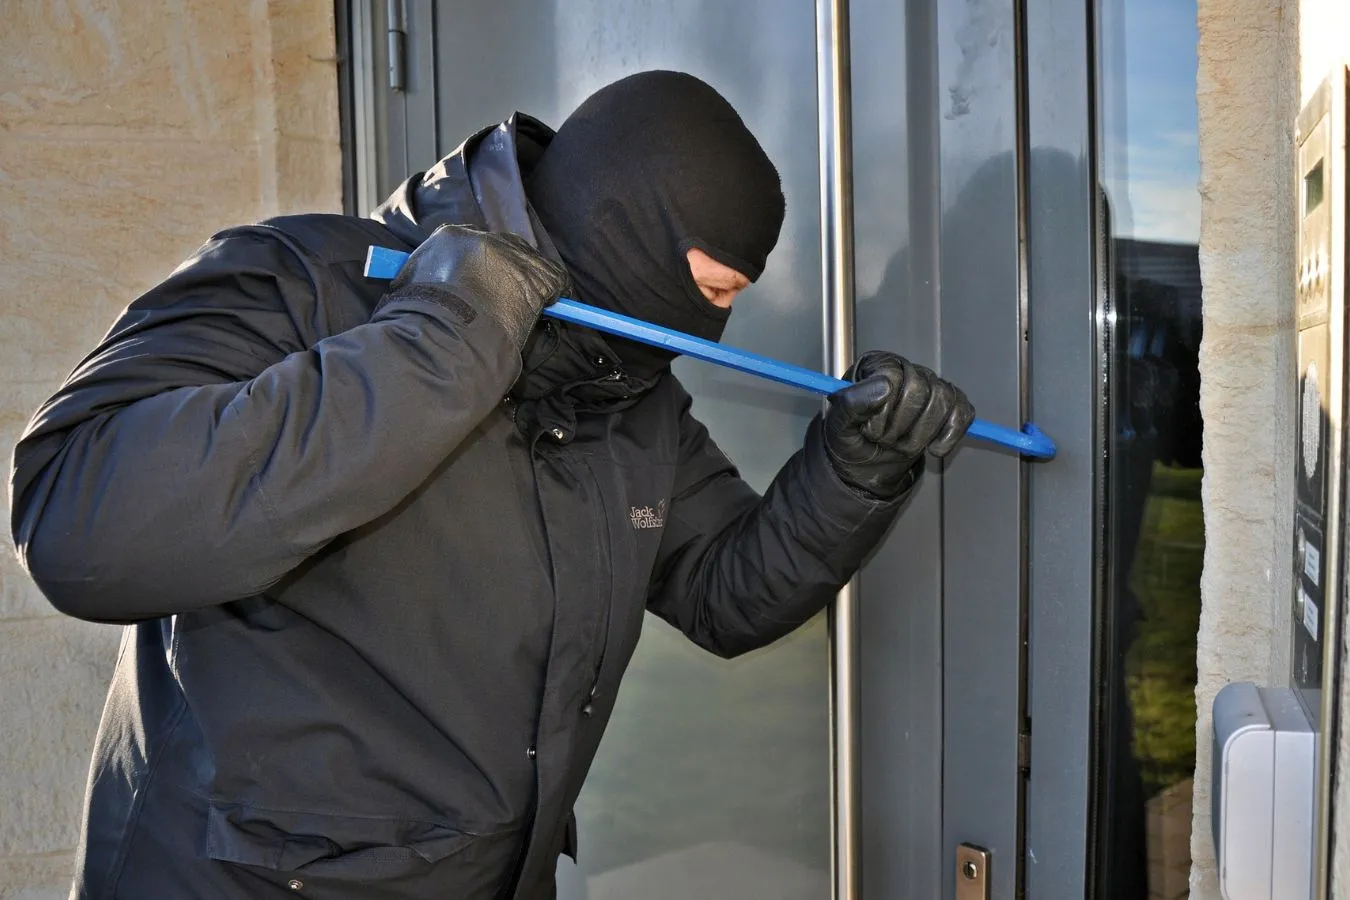 ¿Qué criterio utilizan los ladrones para robar?